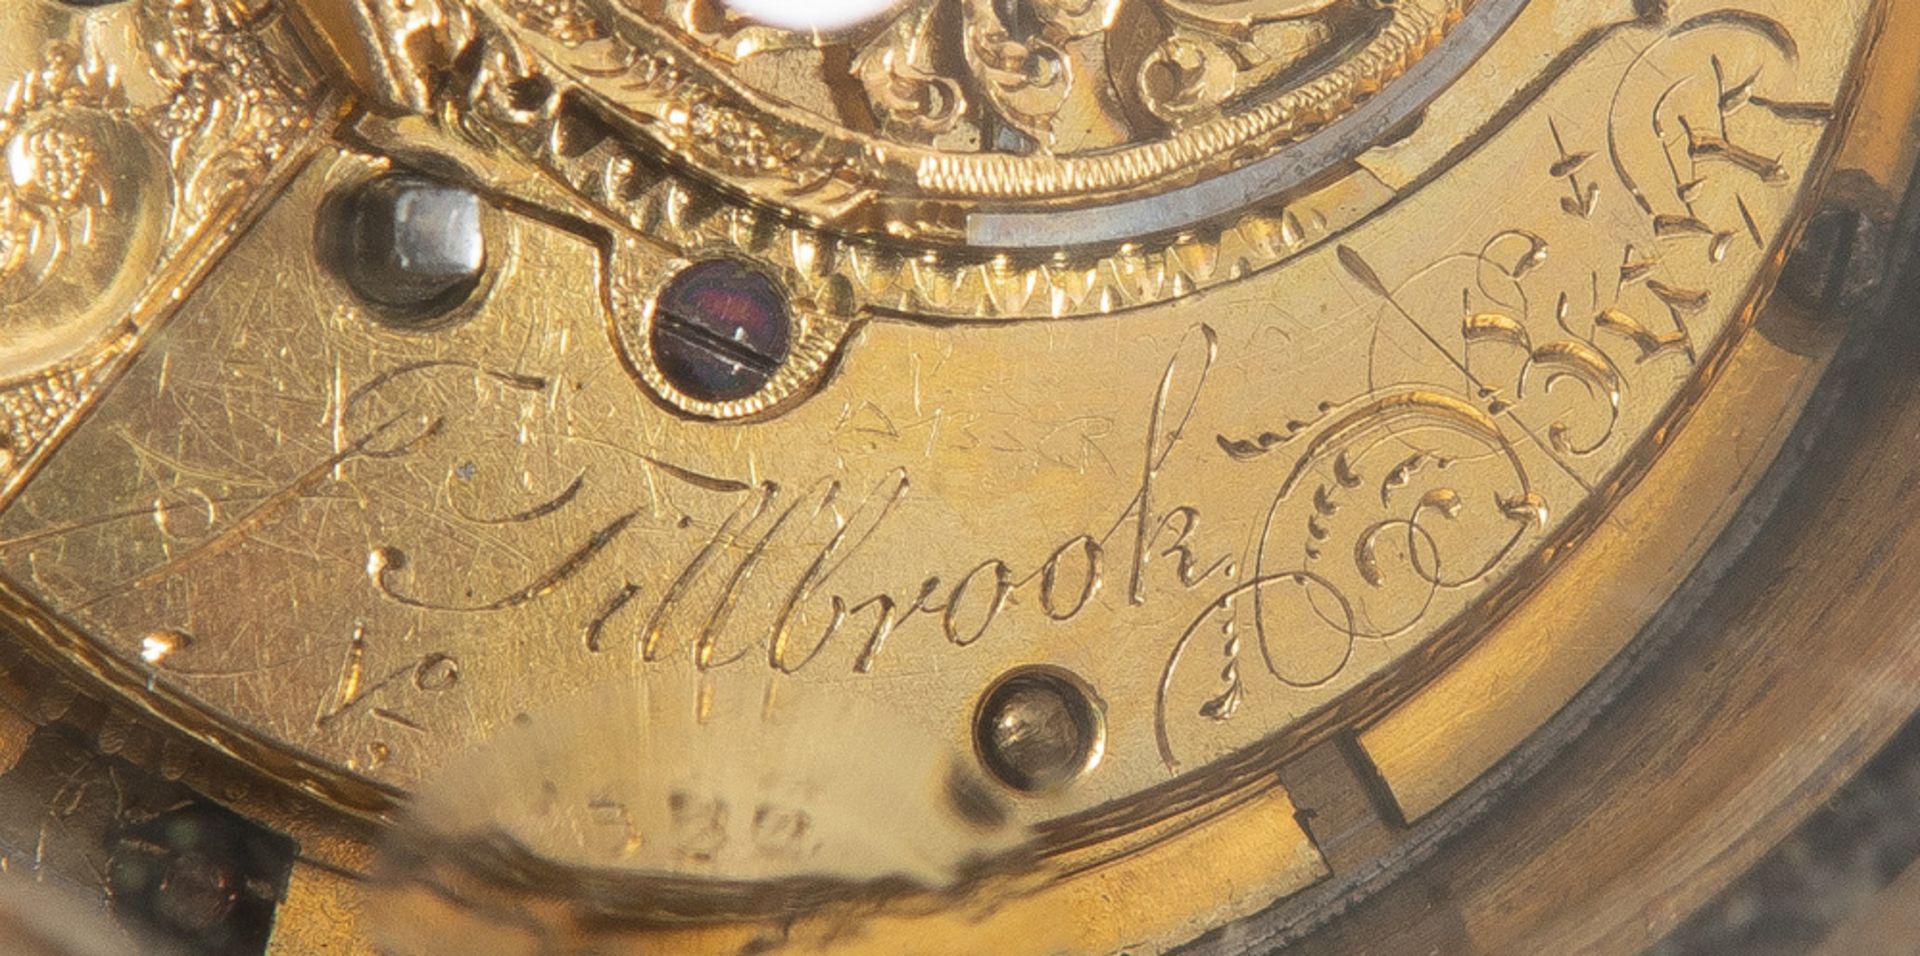 Miniatur-Carteluhr. Paris, Meister L. Tillbrook 19. Jh. Bronze, mit verglaster runder Tür. - Bild 2 aus 2